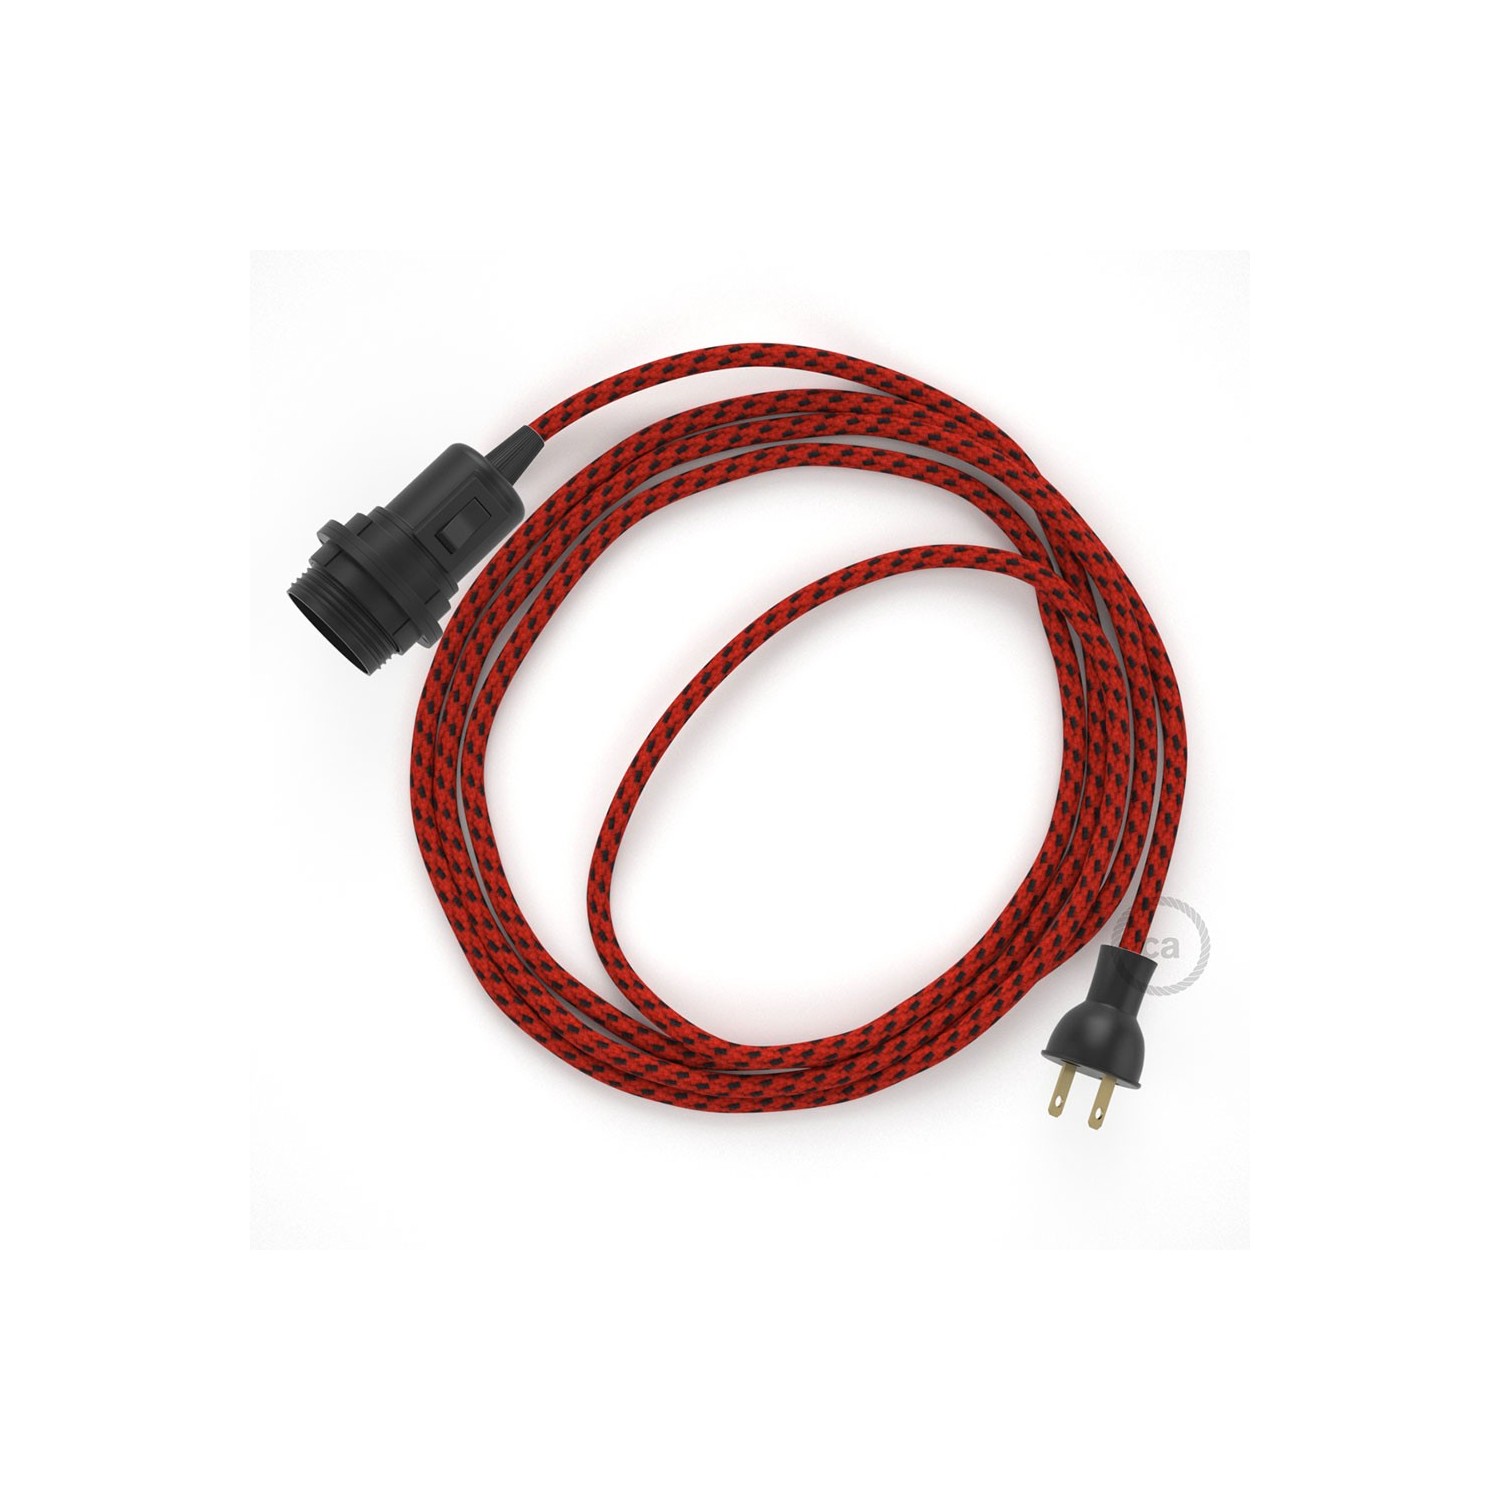 Crea tu Snake para pantalla con cable de Red Devil 3D RT94, socket y enchufe, y trae la luz donde tu quieras.